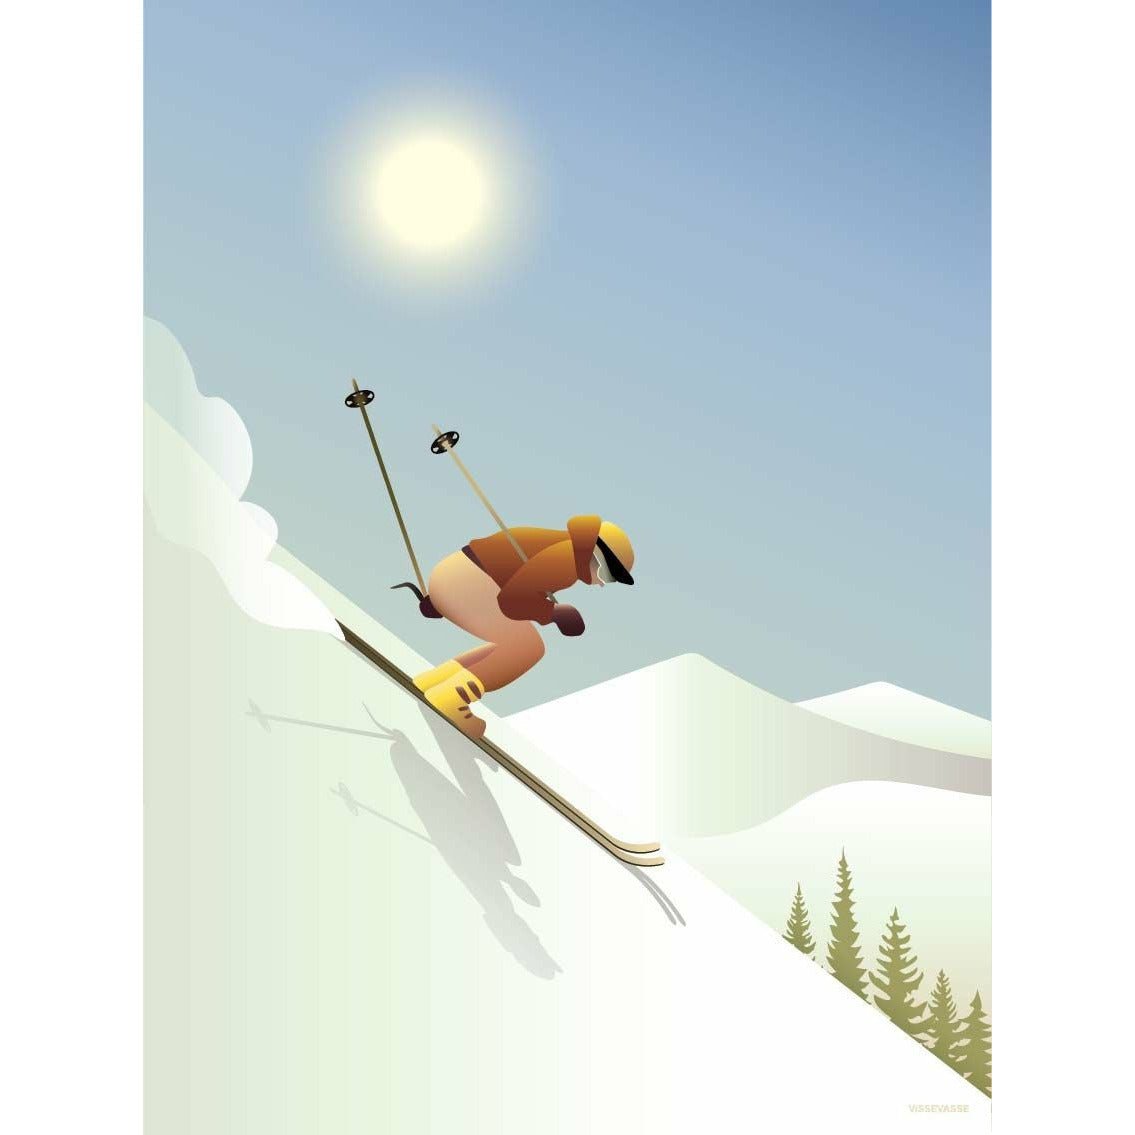 Affiche de ski de Downhill Vissevasse, 30x40 cm